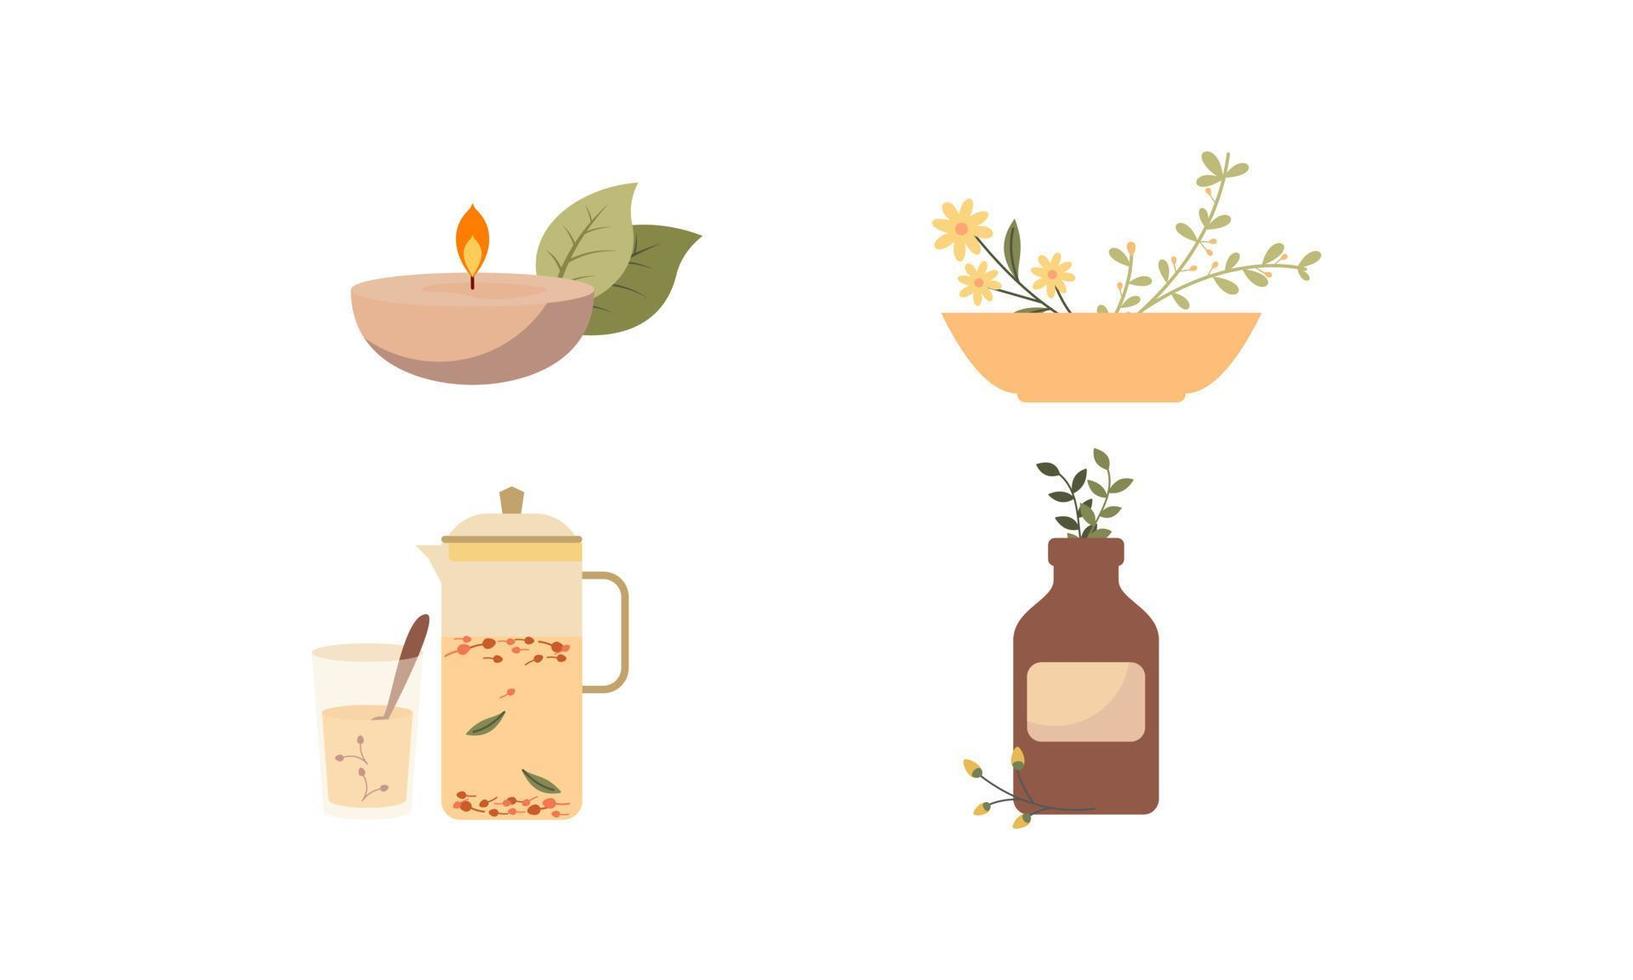 homeopathie, aromatherapie, natuurlijk traditioneel geneeskunde set. kruiden, kruiden thee, homeopathisch natuurgeneeskundige benodigdheden, genezing planten. vector